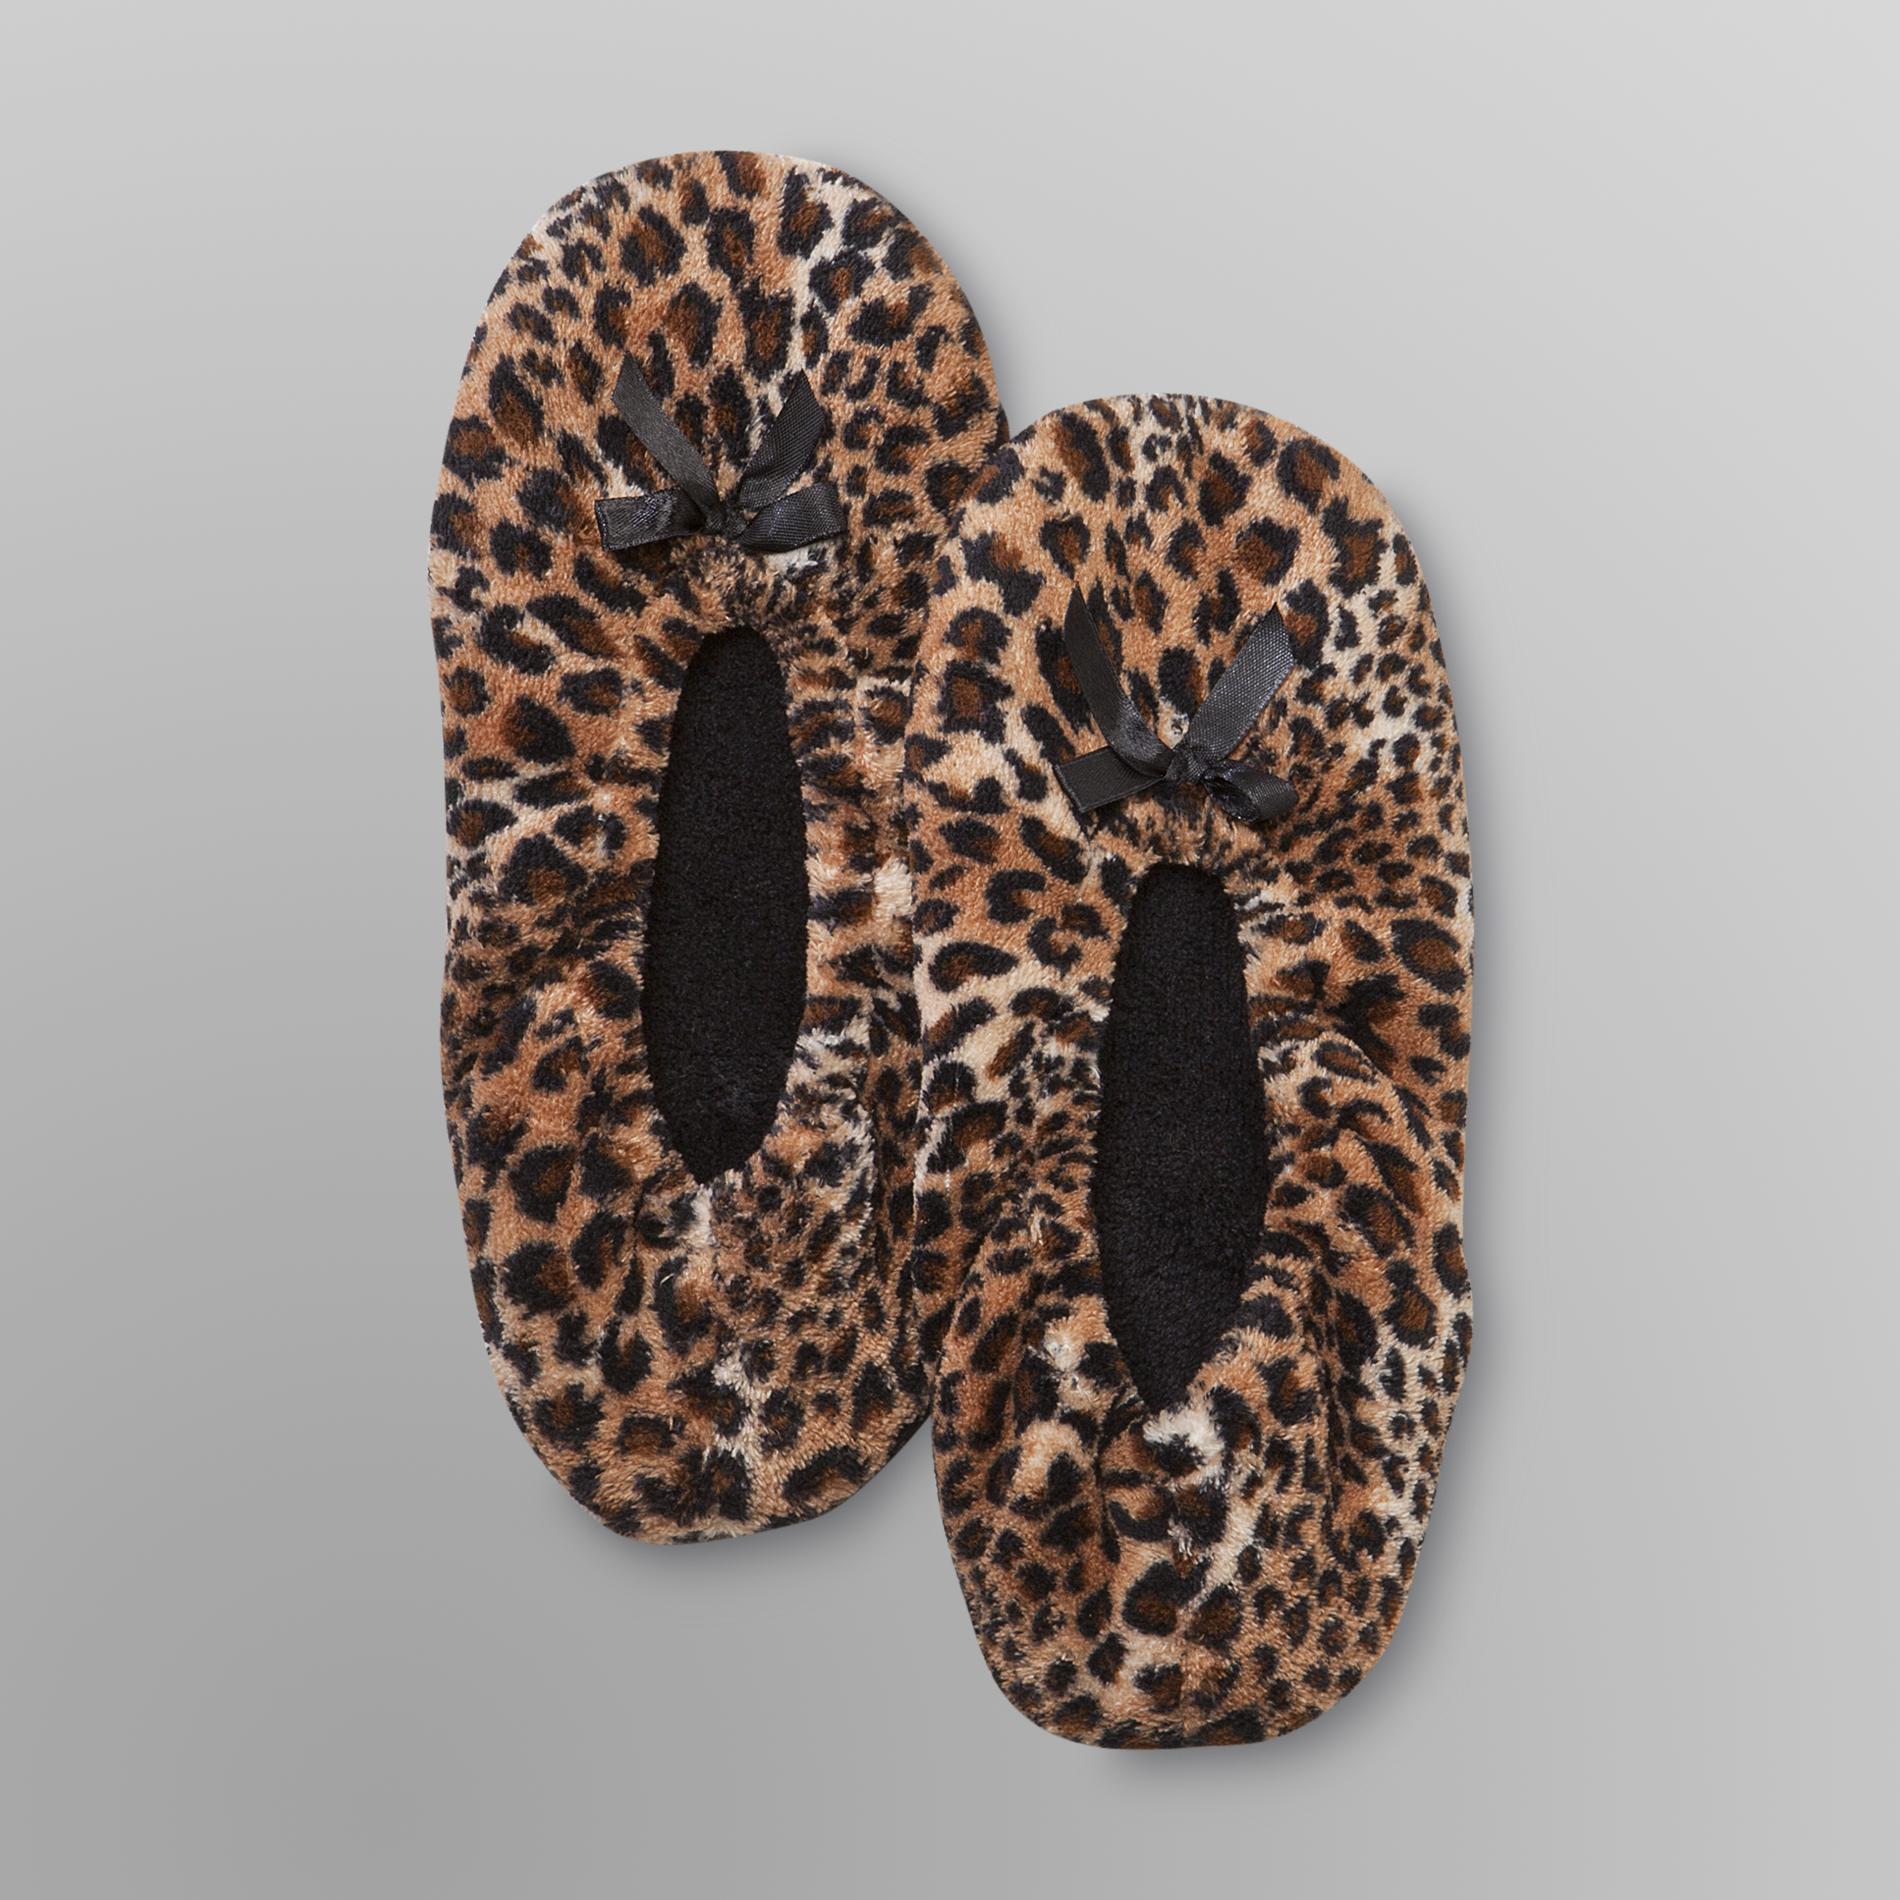 Joe Boxer Women's Slippers - Leopard Print